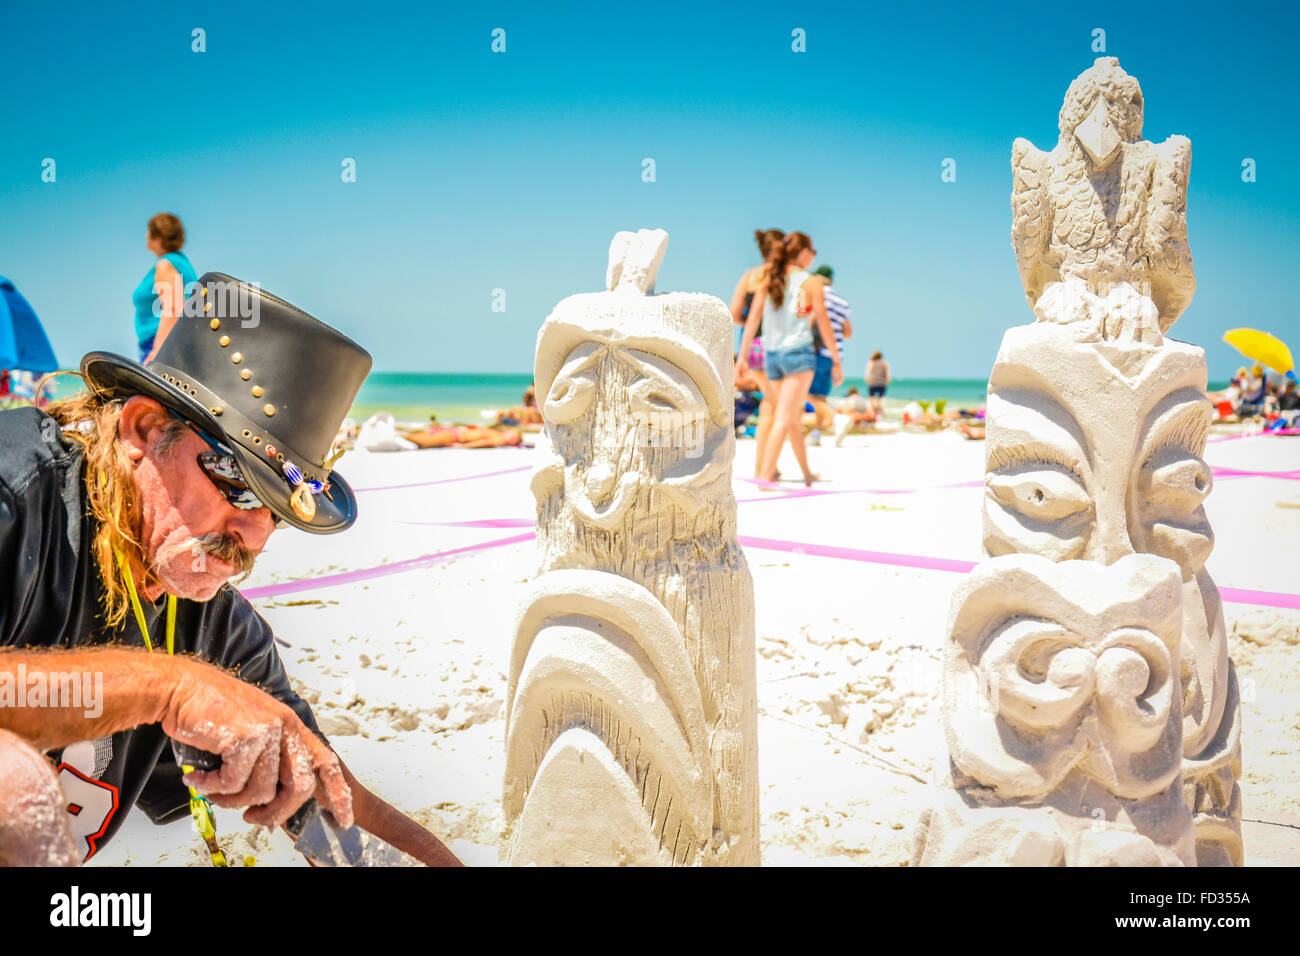 Ein Mann arbeitet auf einer aufwendigen Sandburg Konstruktion erinnert an Totempfähle während eines Wettkampfes am Siesta Key Beach, FL Stockfoto